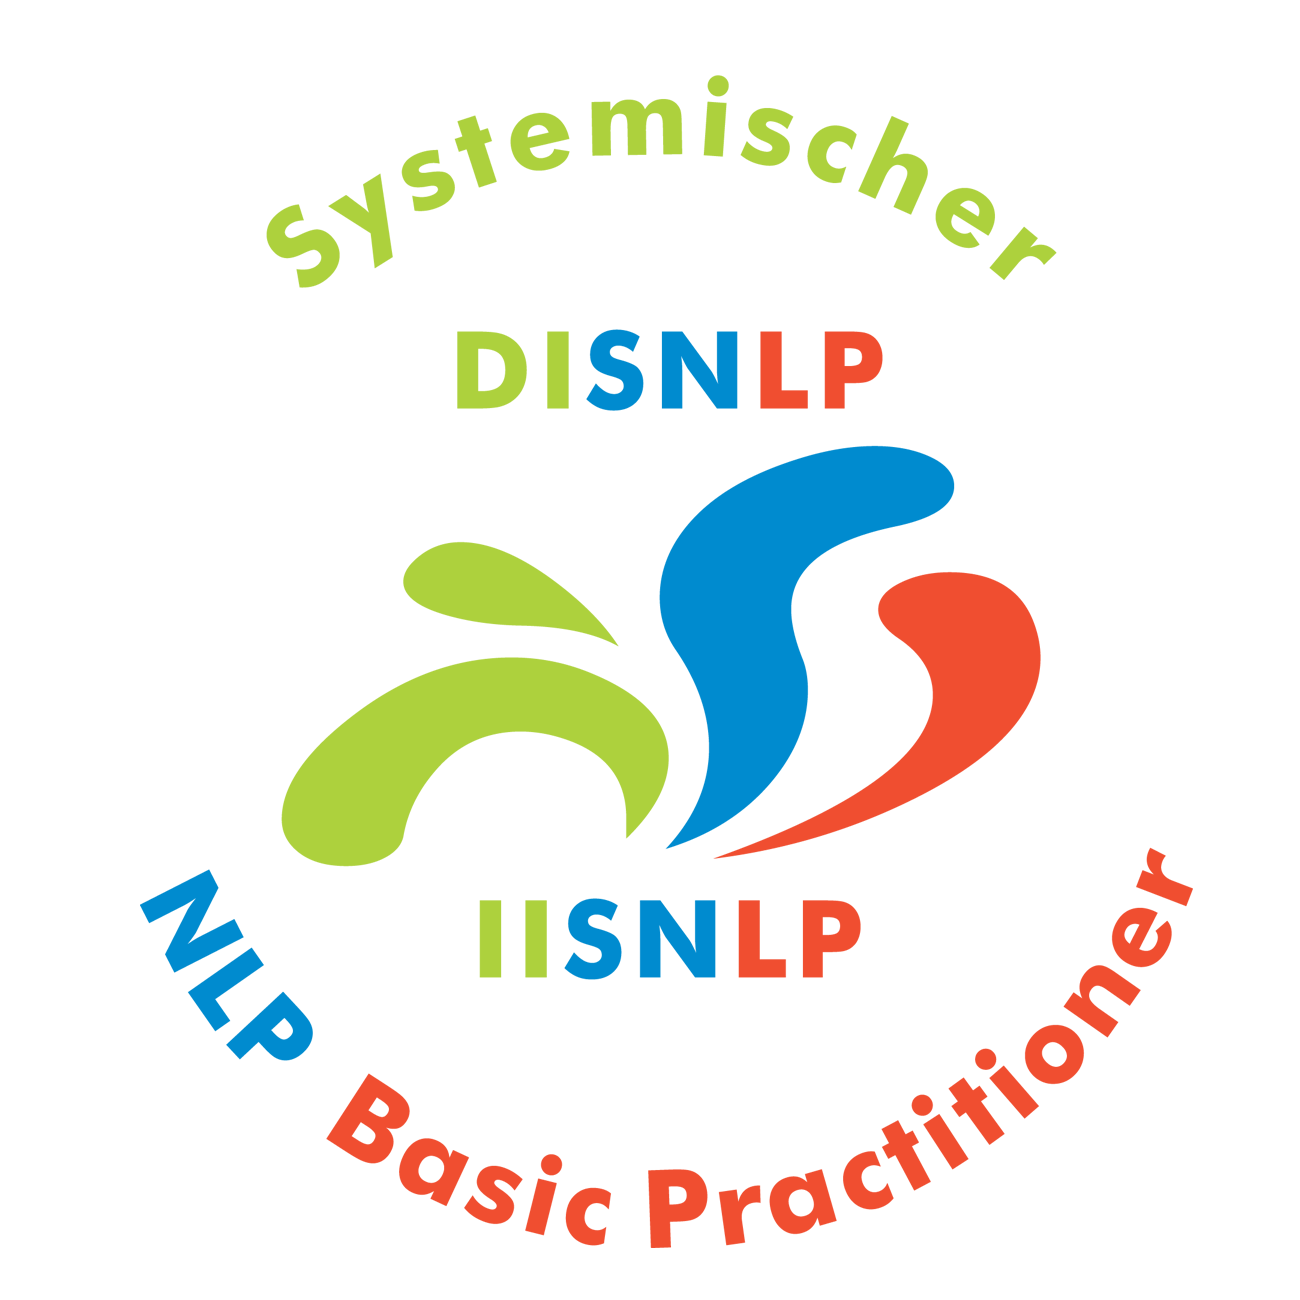 Seminar Selbstbewusstsein, Selbstvertrauen, Selbstwert, Selbstsicherheit stärken Bad Neuenahr Ahrweiler mit NLP Coaching Kurs für mehr Selbstbewusstsein